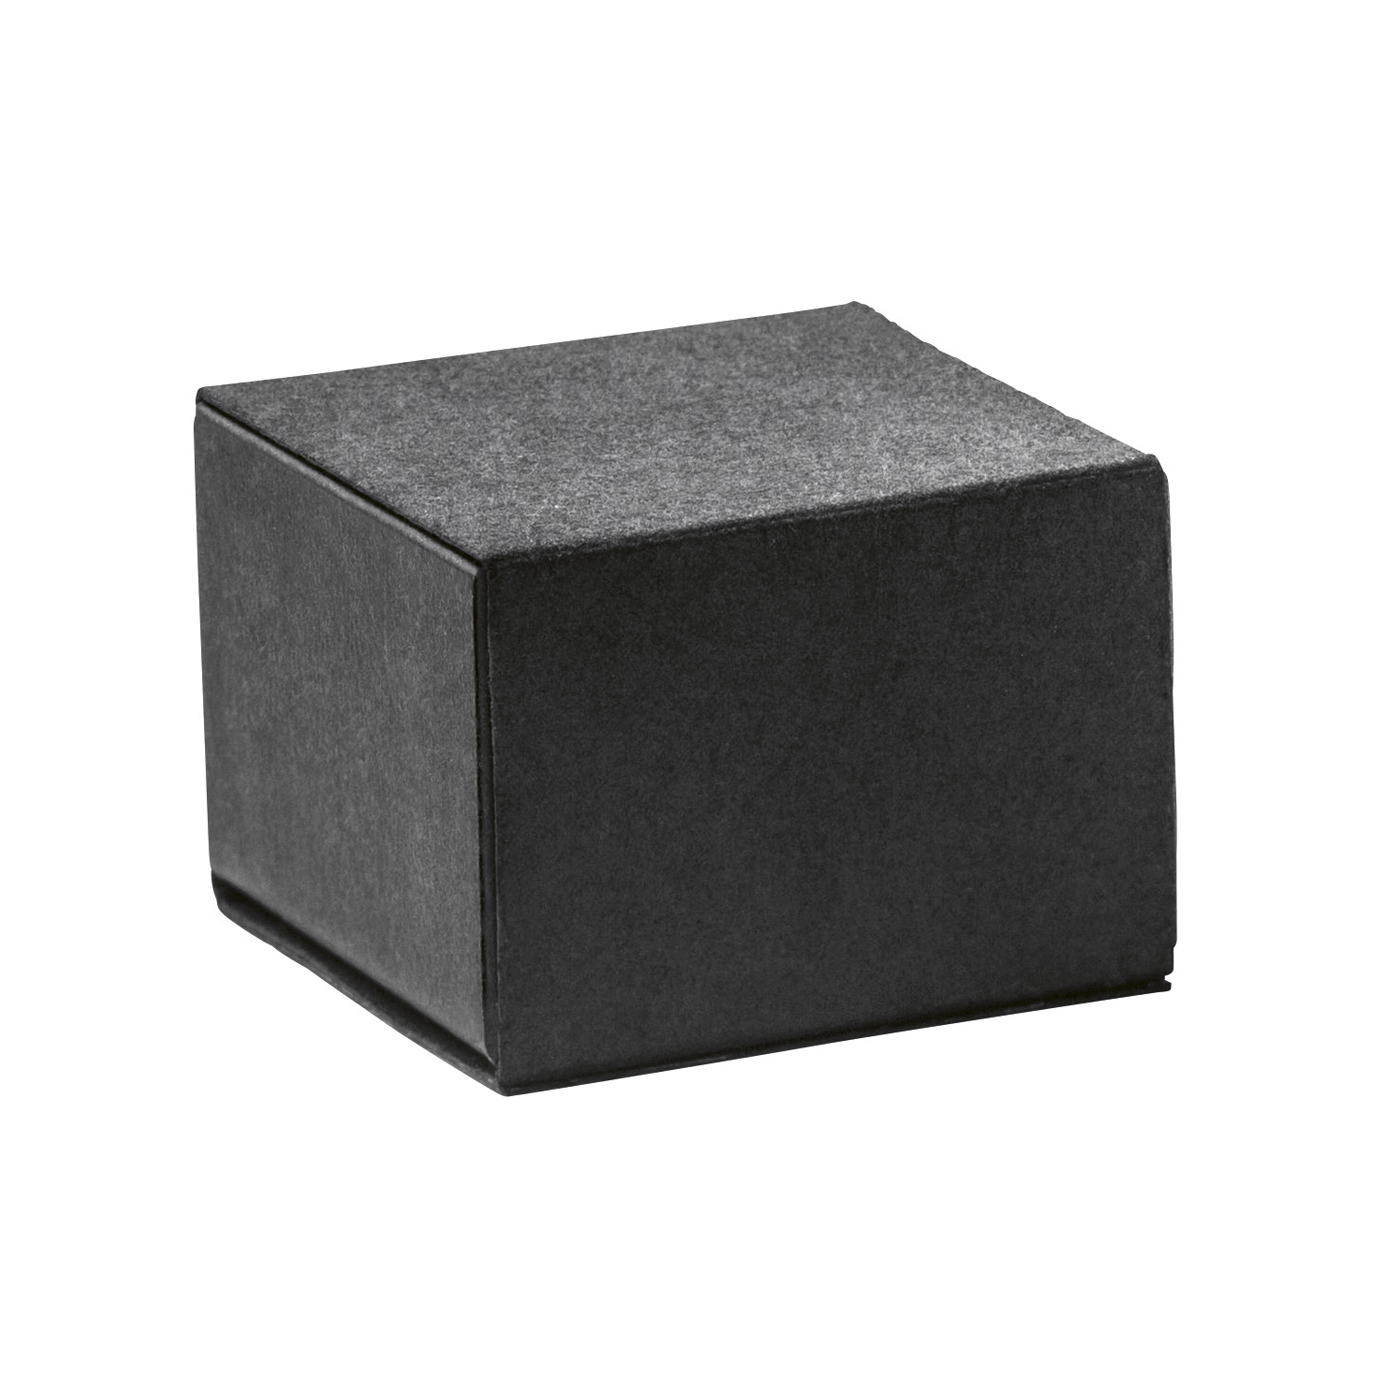 PICA-Design Schmucketui "Quadrabox", schwarz, 47 x 47 x 33 mm - 1 Stück